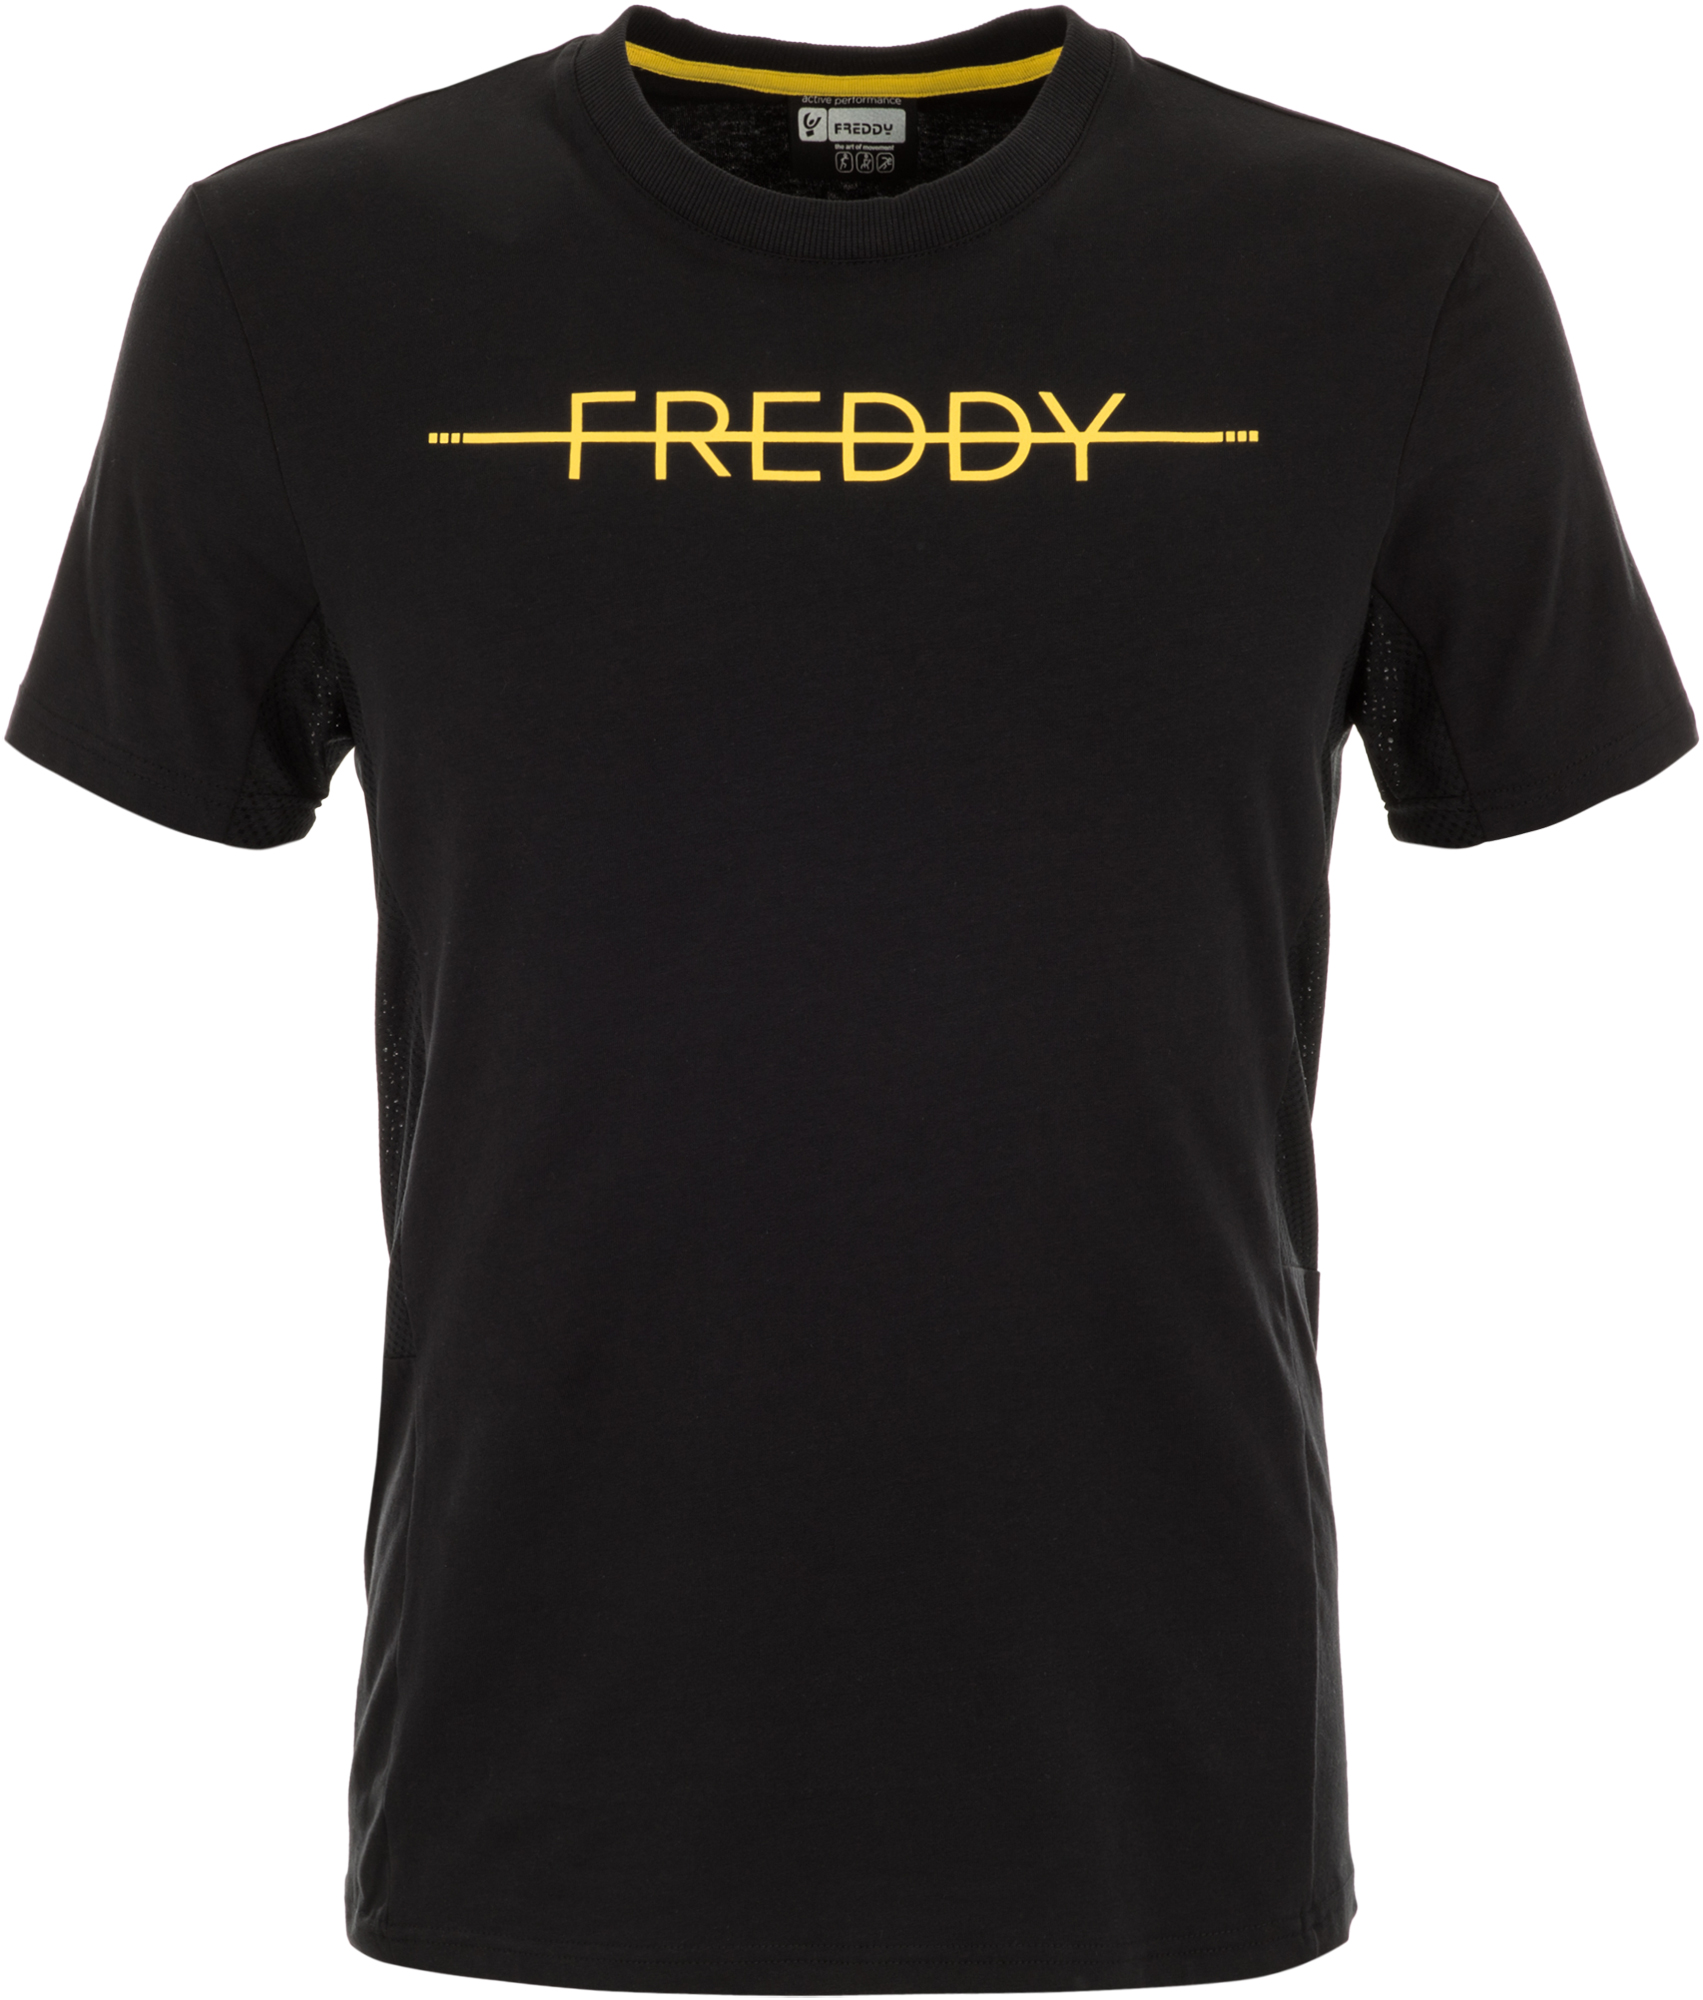 Freddy Футболка мужская Freddy New Athletic, размер 52-54